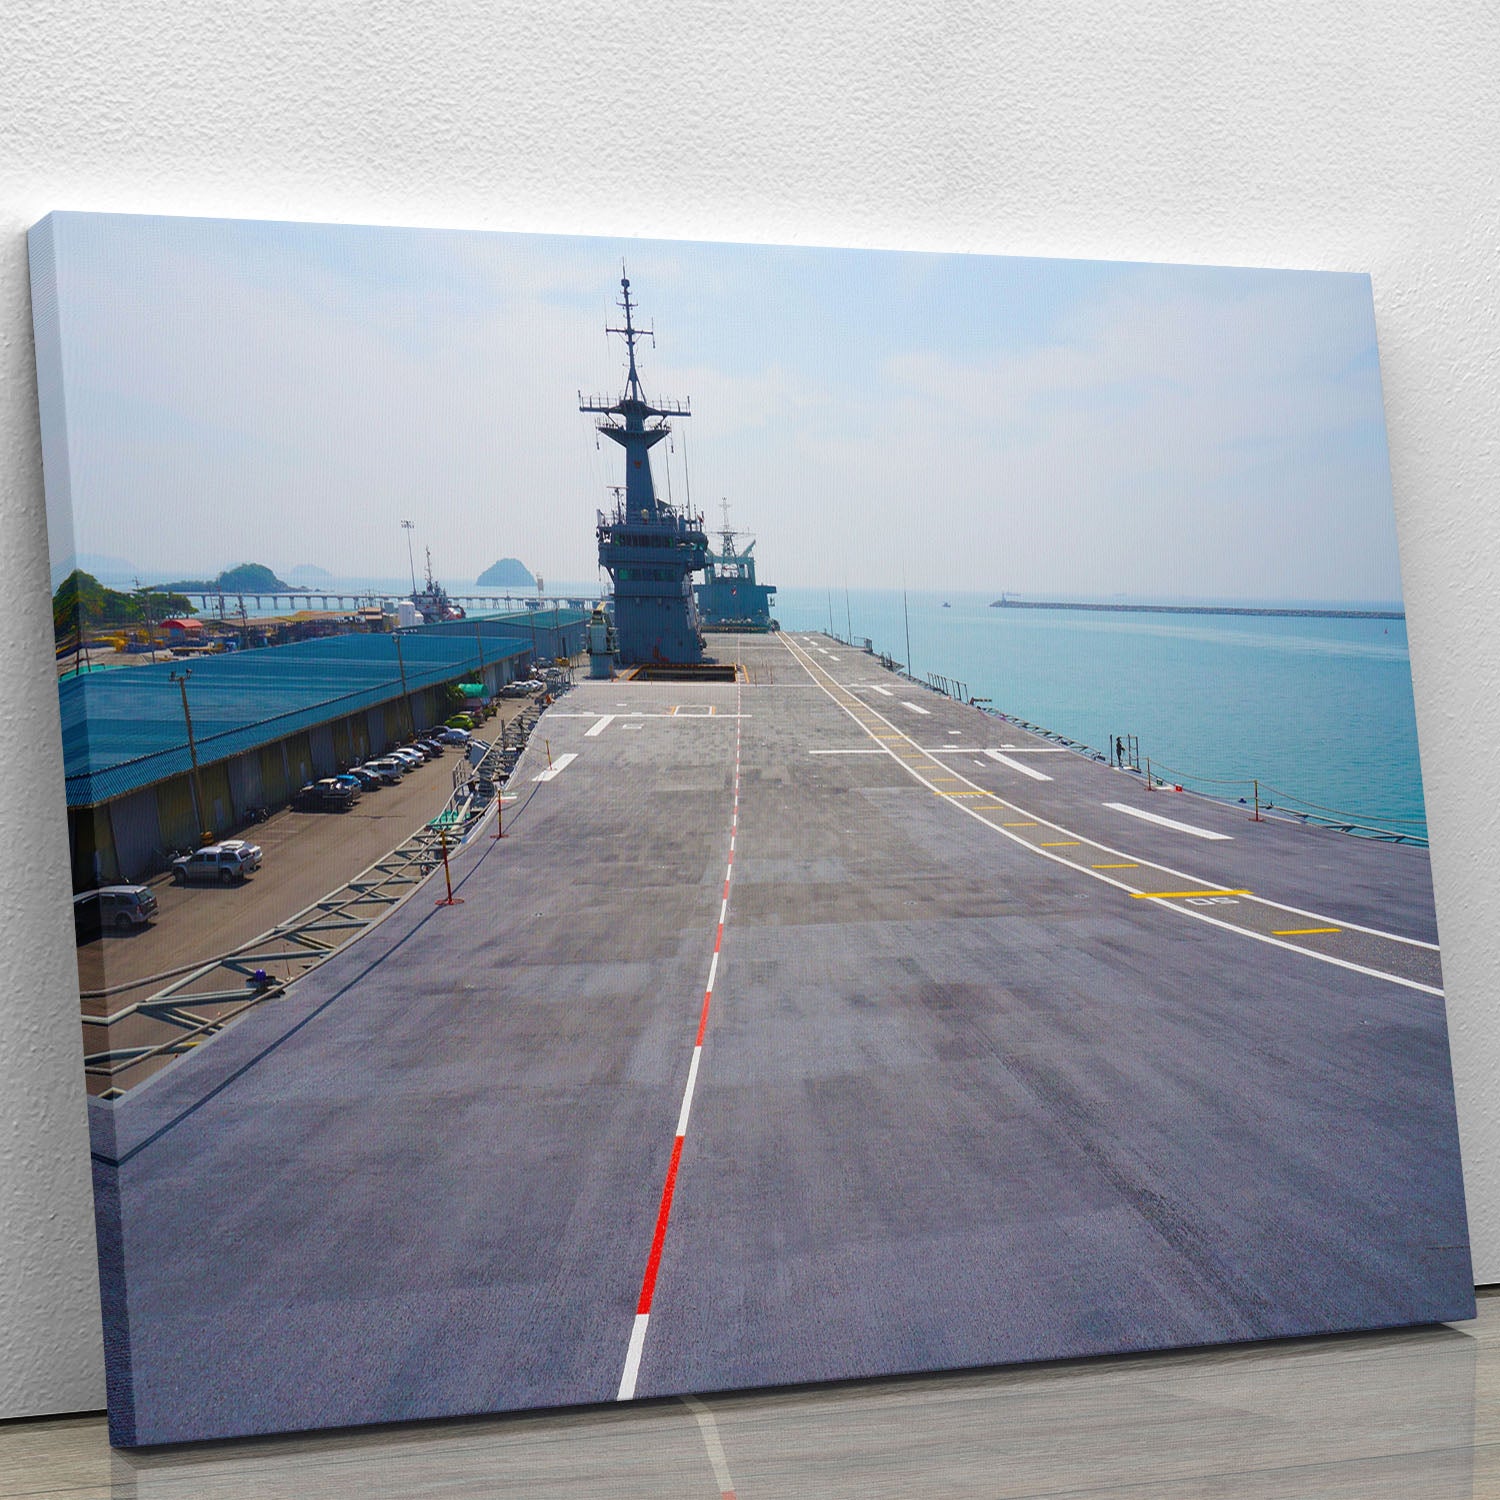 Flight deck of an aircraft carrier Canvas Print or Poster - Canvas Art Rocks - 1